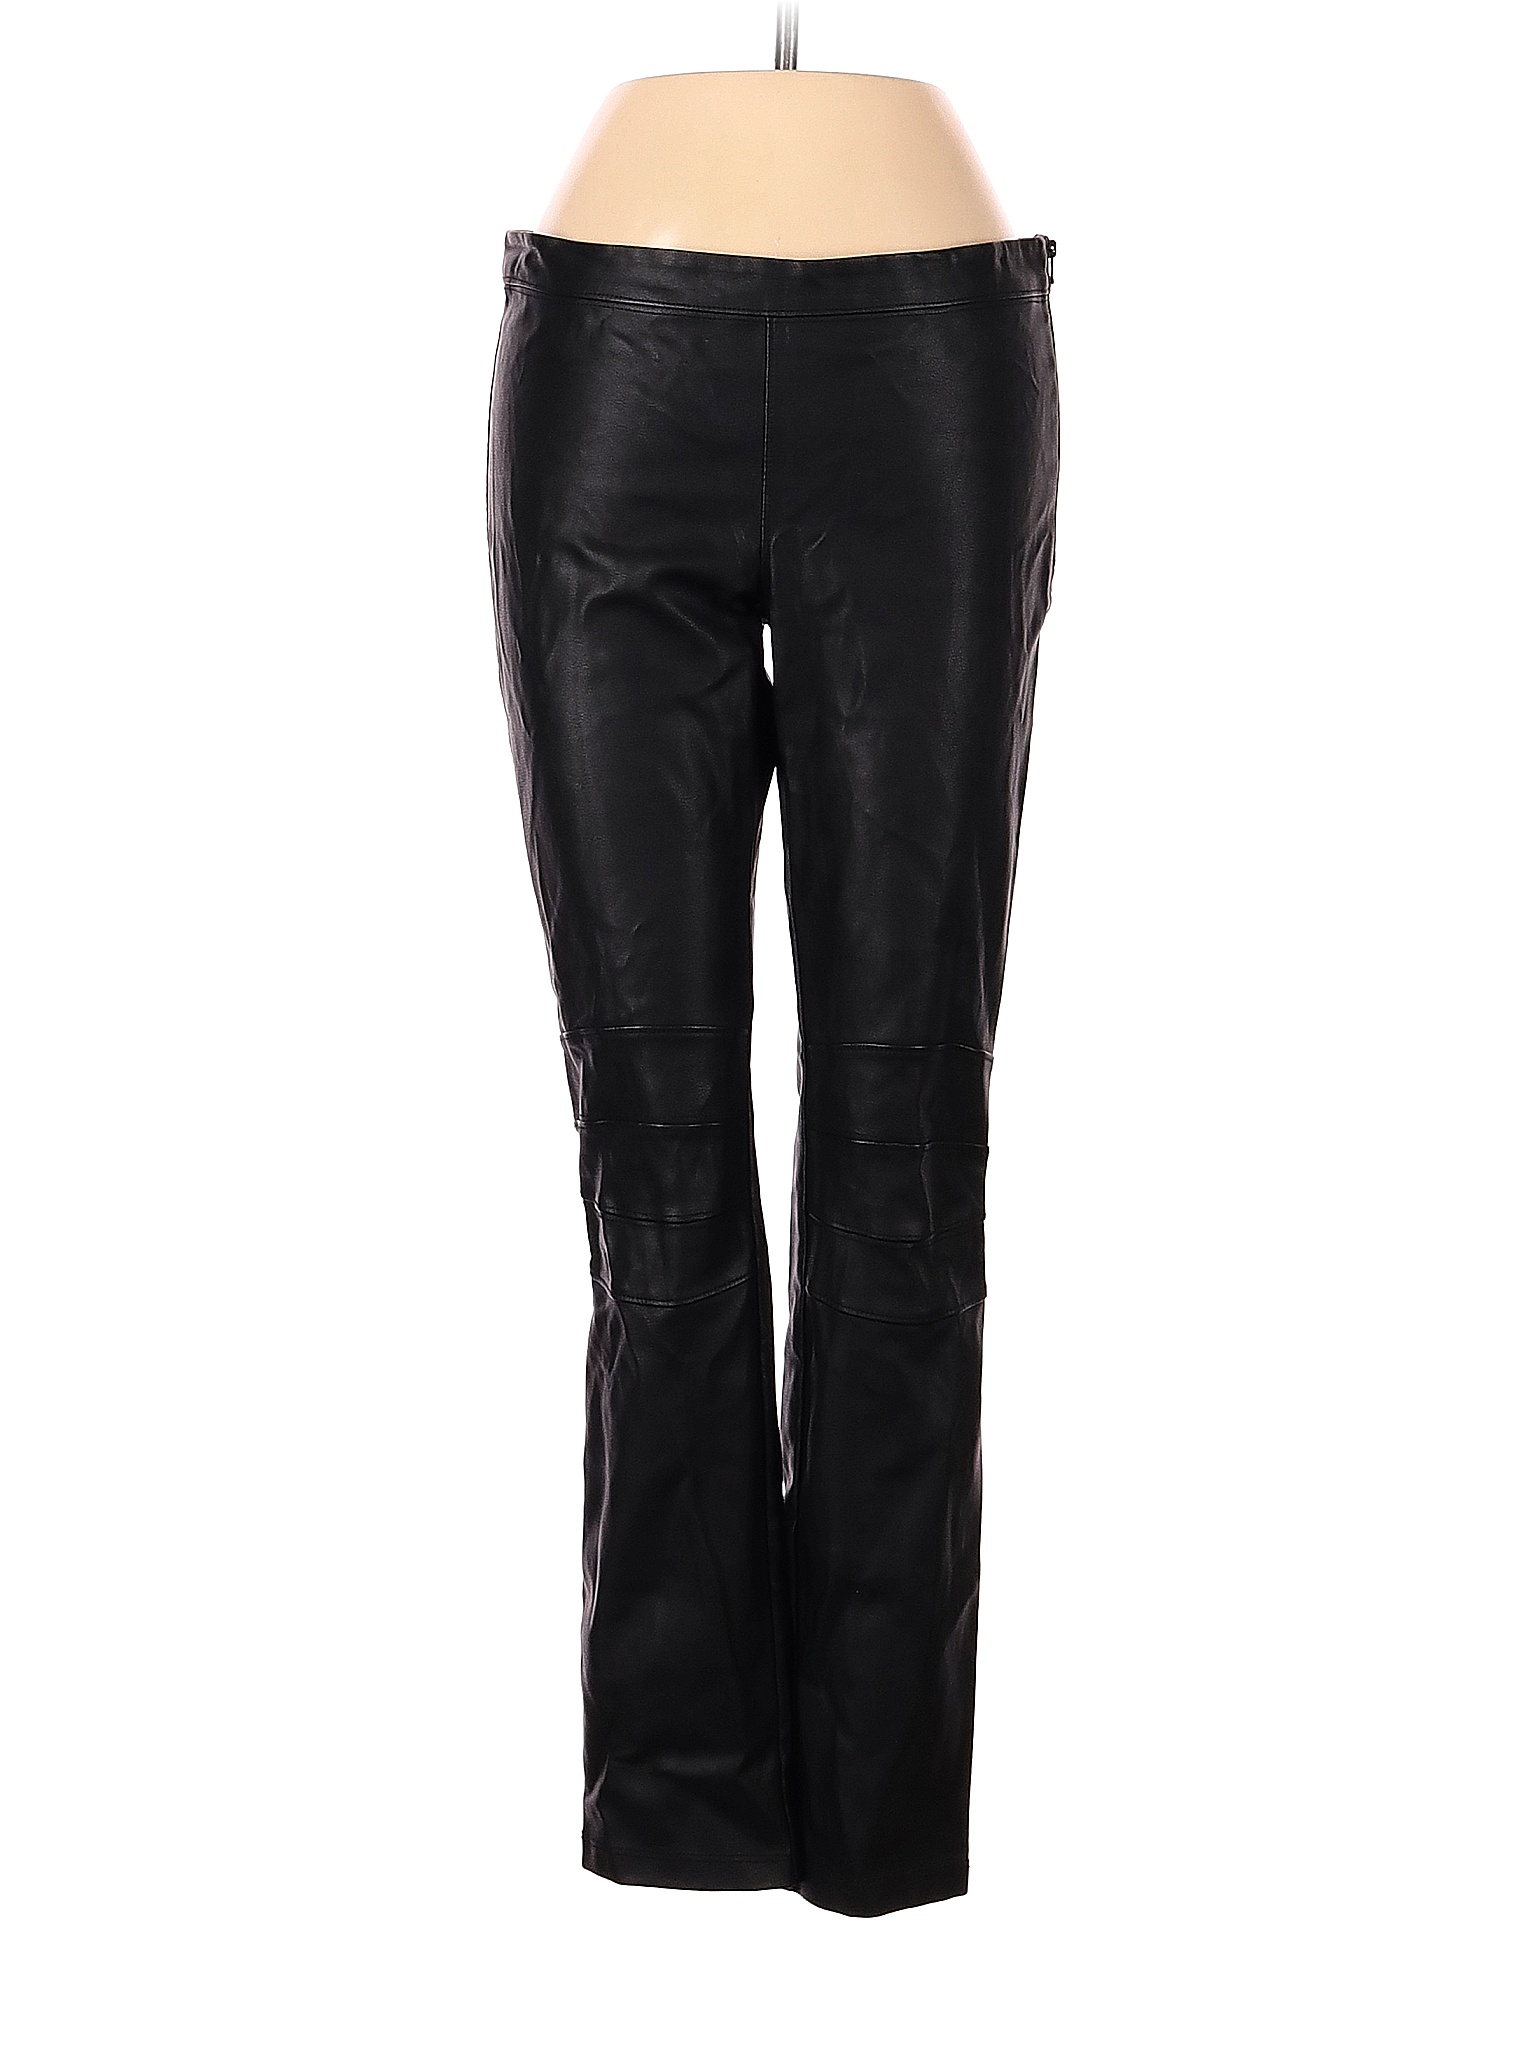 David Lerner Solid Black Faux Leather Pants Size S - 81% off | thredUP